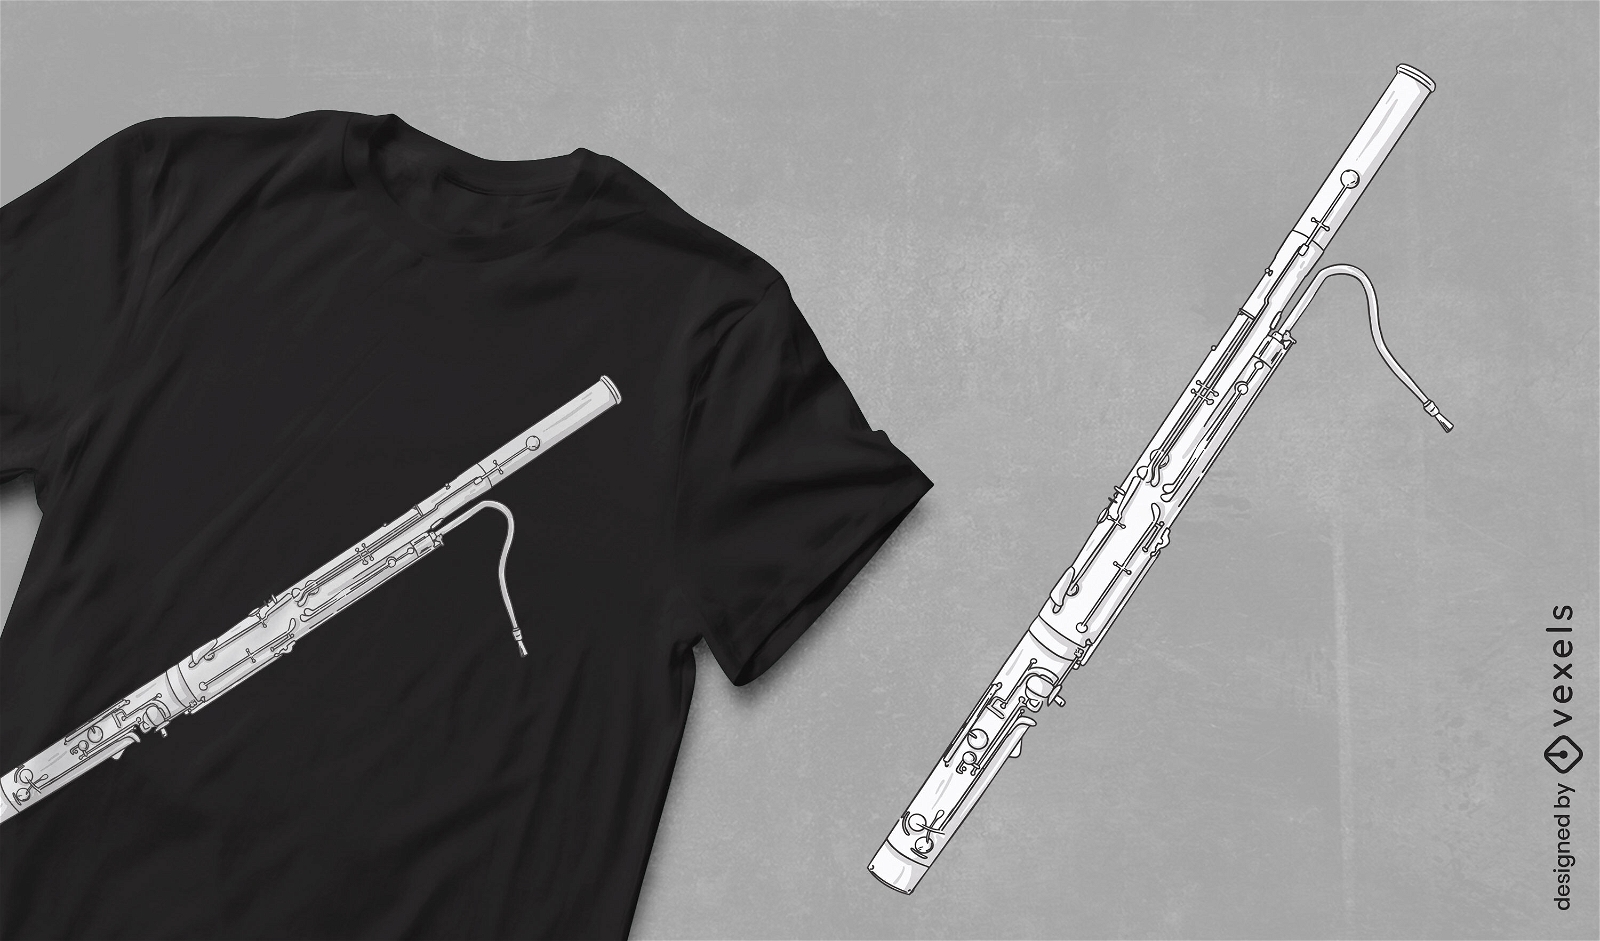 Dise?o de camiseta de instrumento musical de fagot.